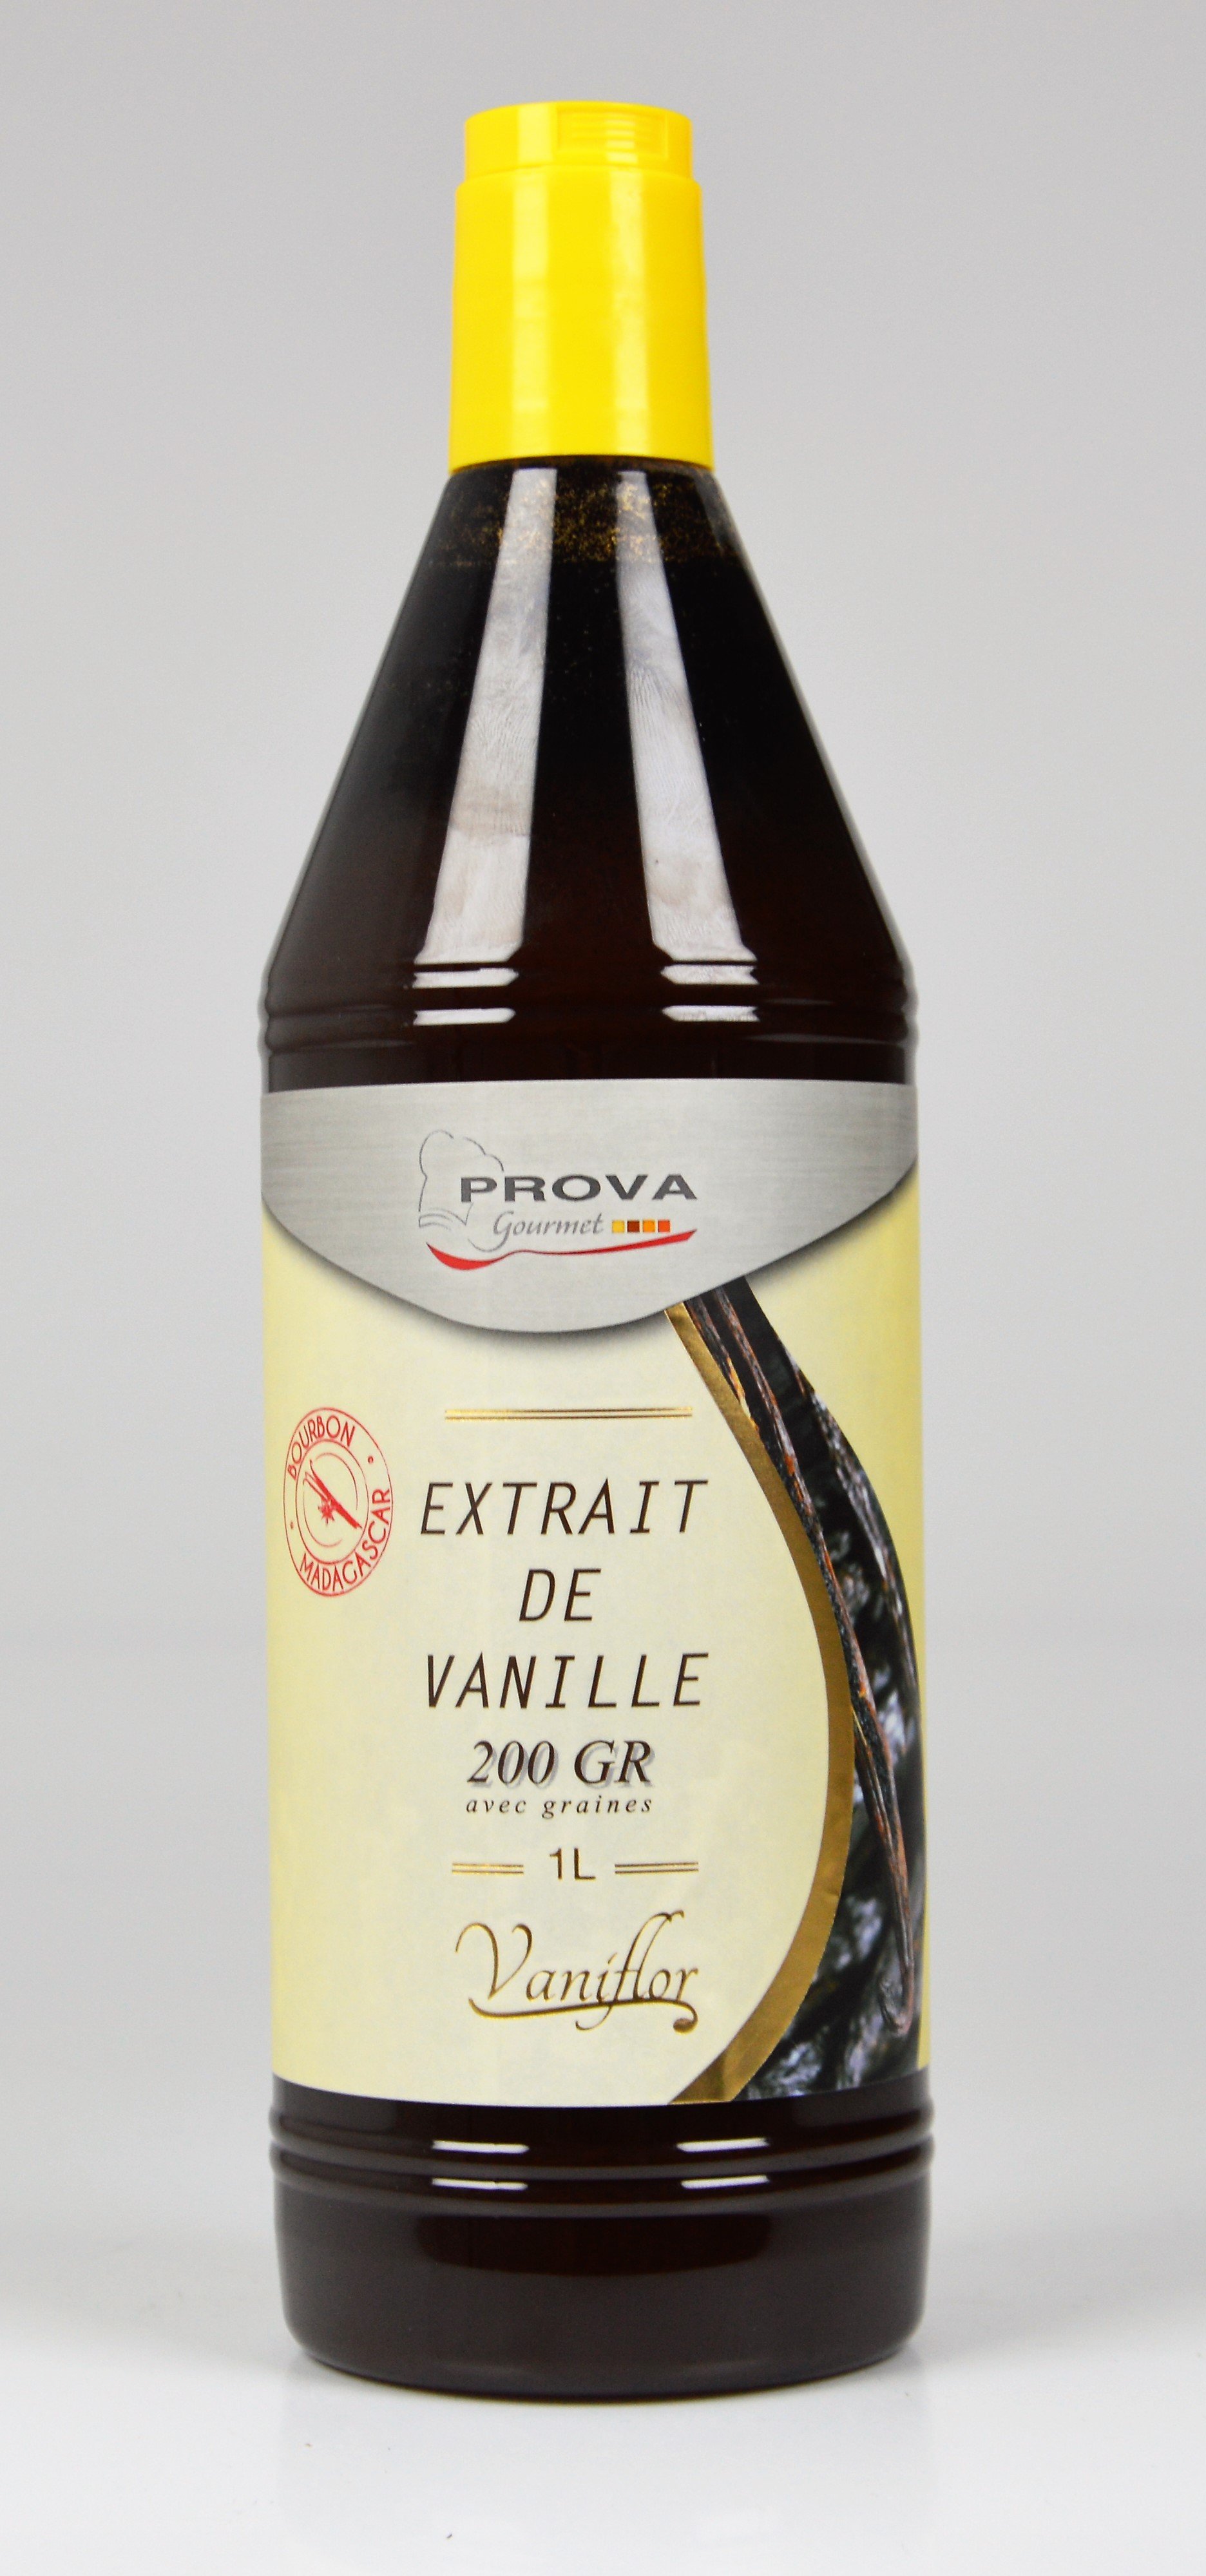 Extrait liquide LAVANY de Vanille Bourbon de Madagascar 200 g